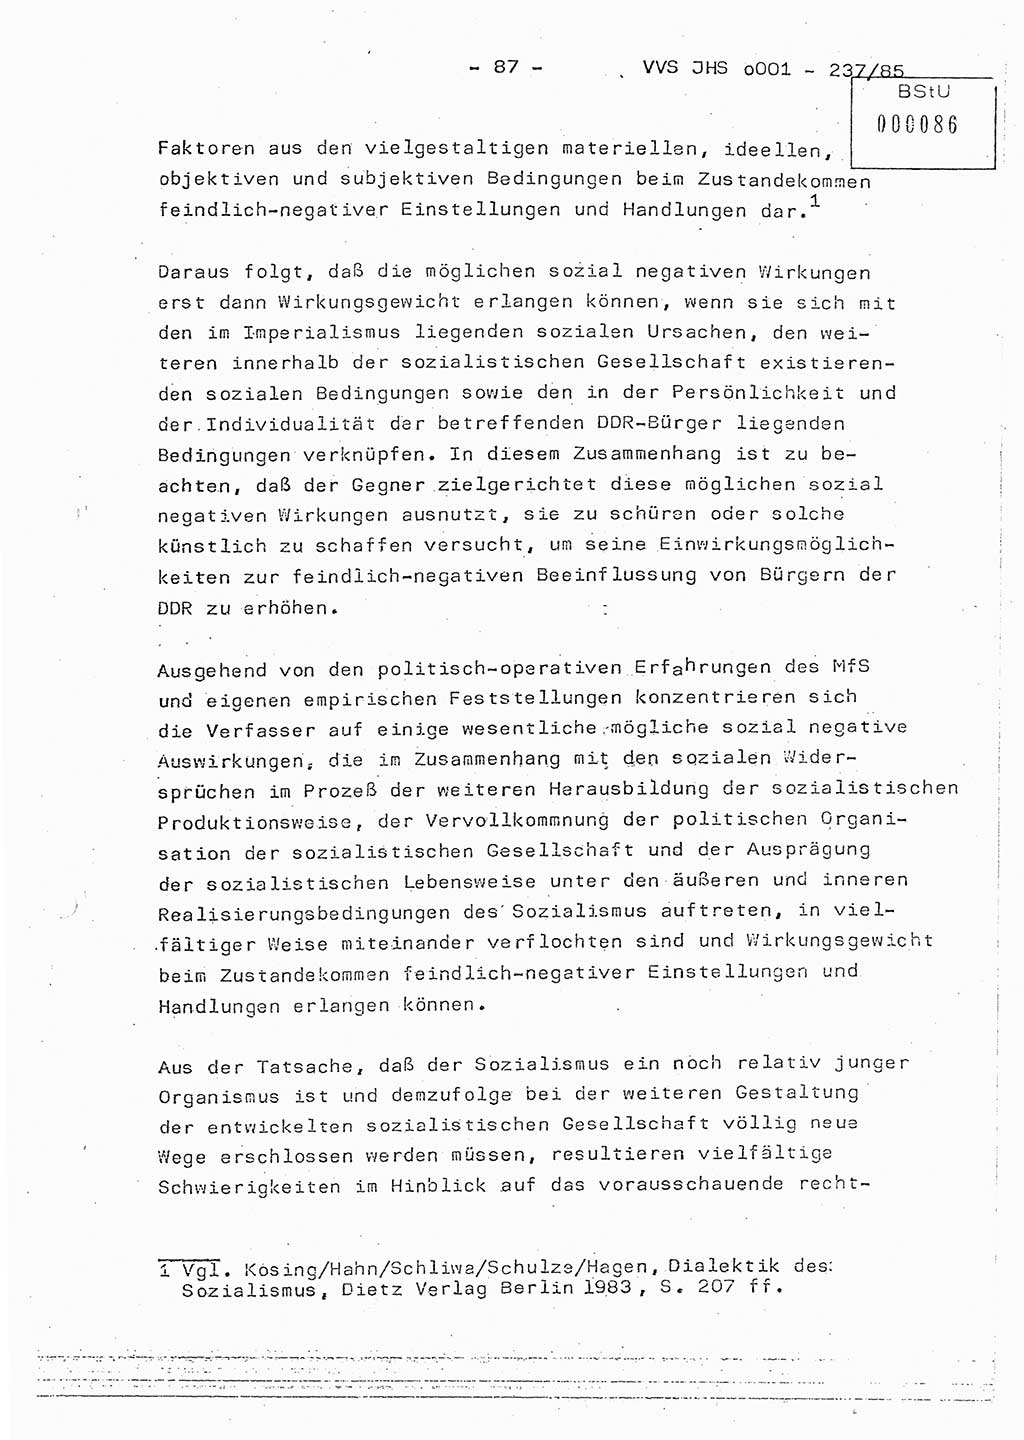 Dissertation Oberstleutnant Peter Jakulski (JHS), Oberstleutnat Christian Rudolph (HA Ⅸ), Major Horst Böttger (ZMD), Major Wolfgang Grüneberg (JHS), Major Albert Meutsch (JHS), Ministerium für Staatssicherheit (MfS) [Deutsche Demokratische Republik (DDR)], Juristische Hochschule (JHS), Vertrauliche Verschlußsache (VVS) o001-237/85, Potsdam 1985, Seite 87 (Diss. MfS DDR JHS VVS o001-237/85 1985, S. 87)